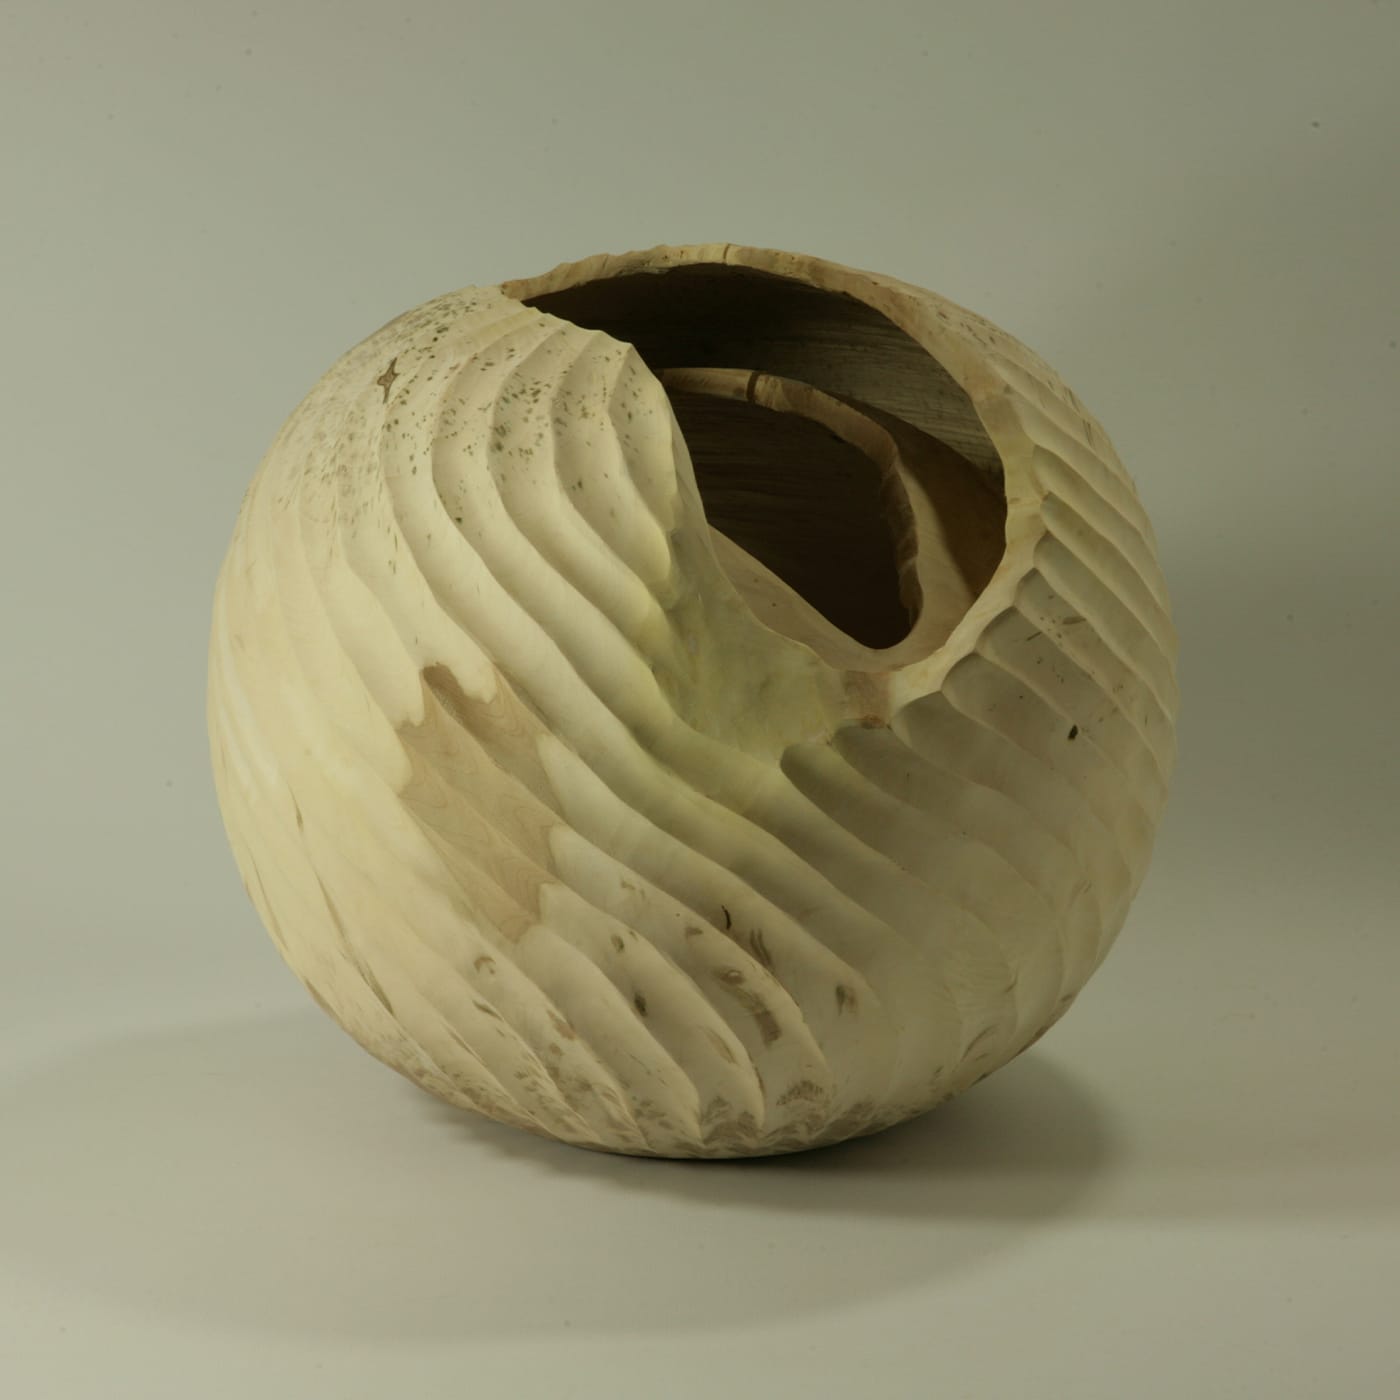 Doppio bordo hollow form sculpture - Nicola Tessari